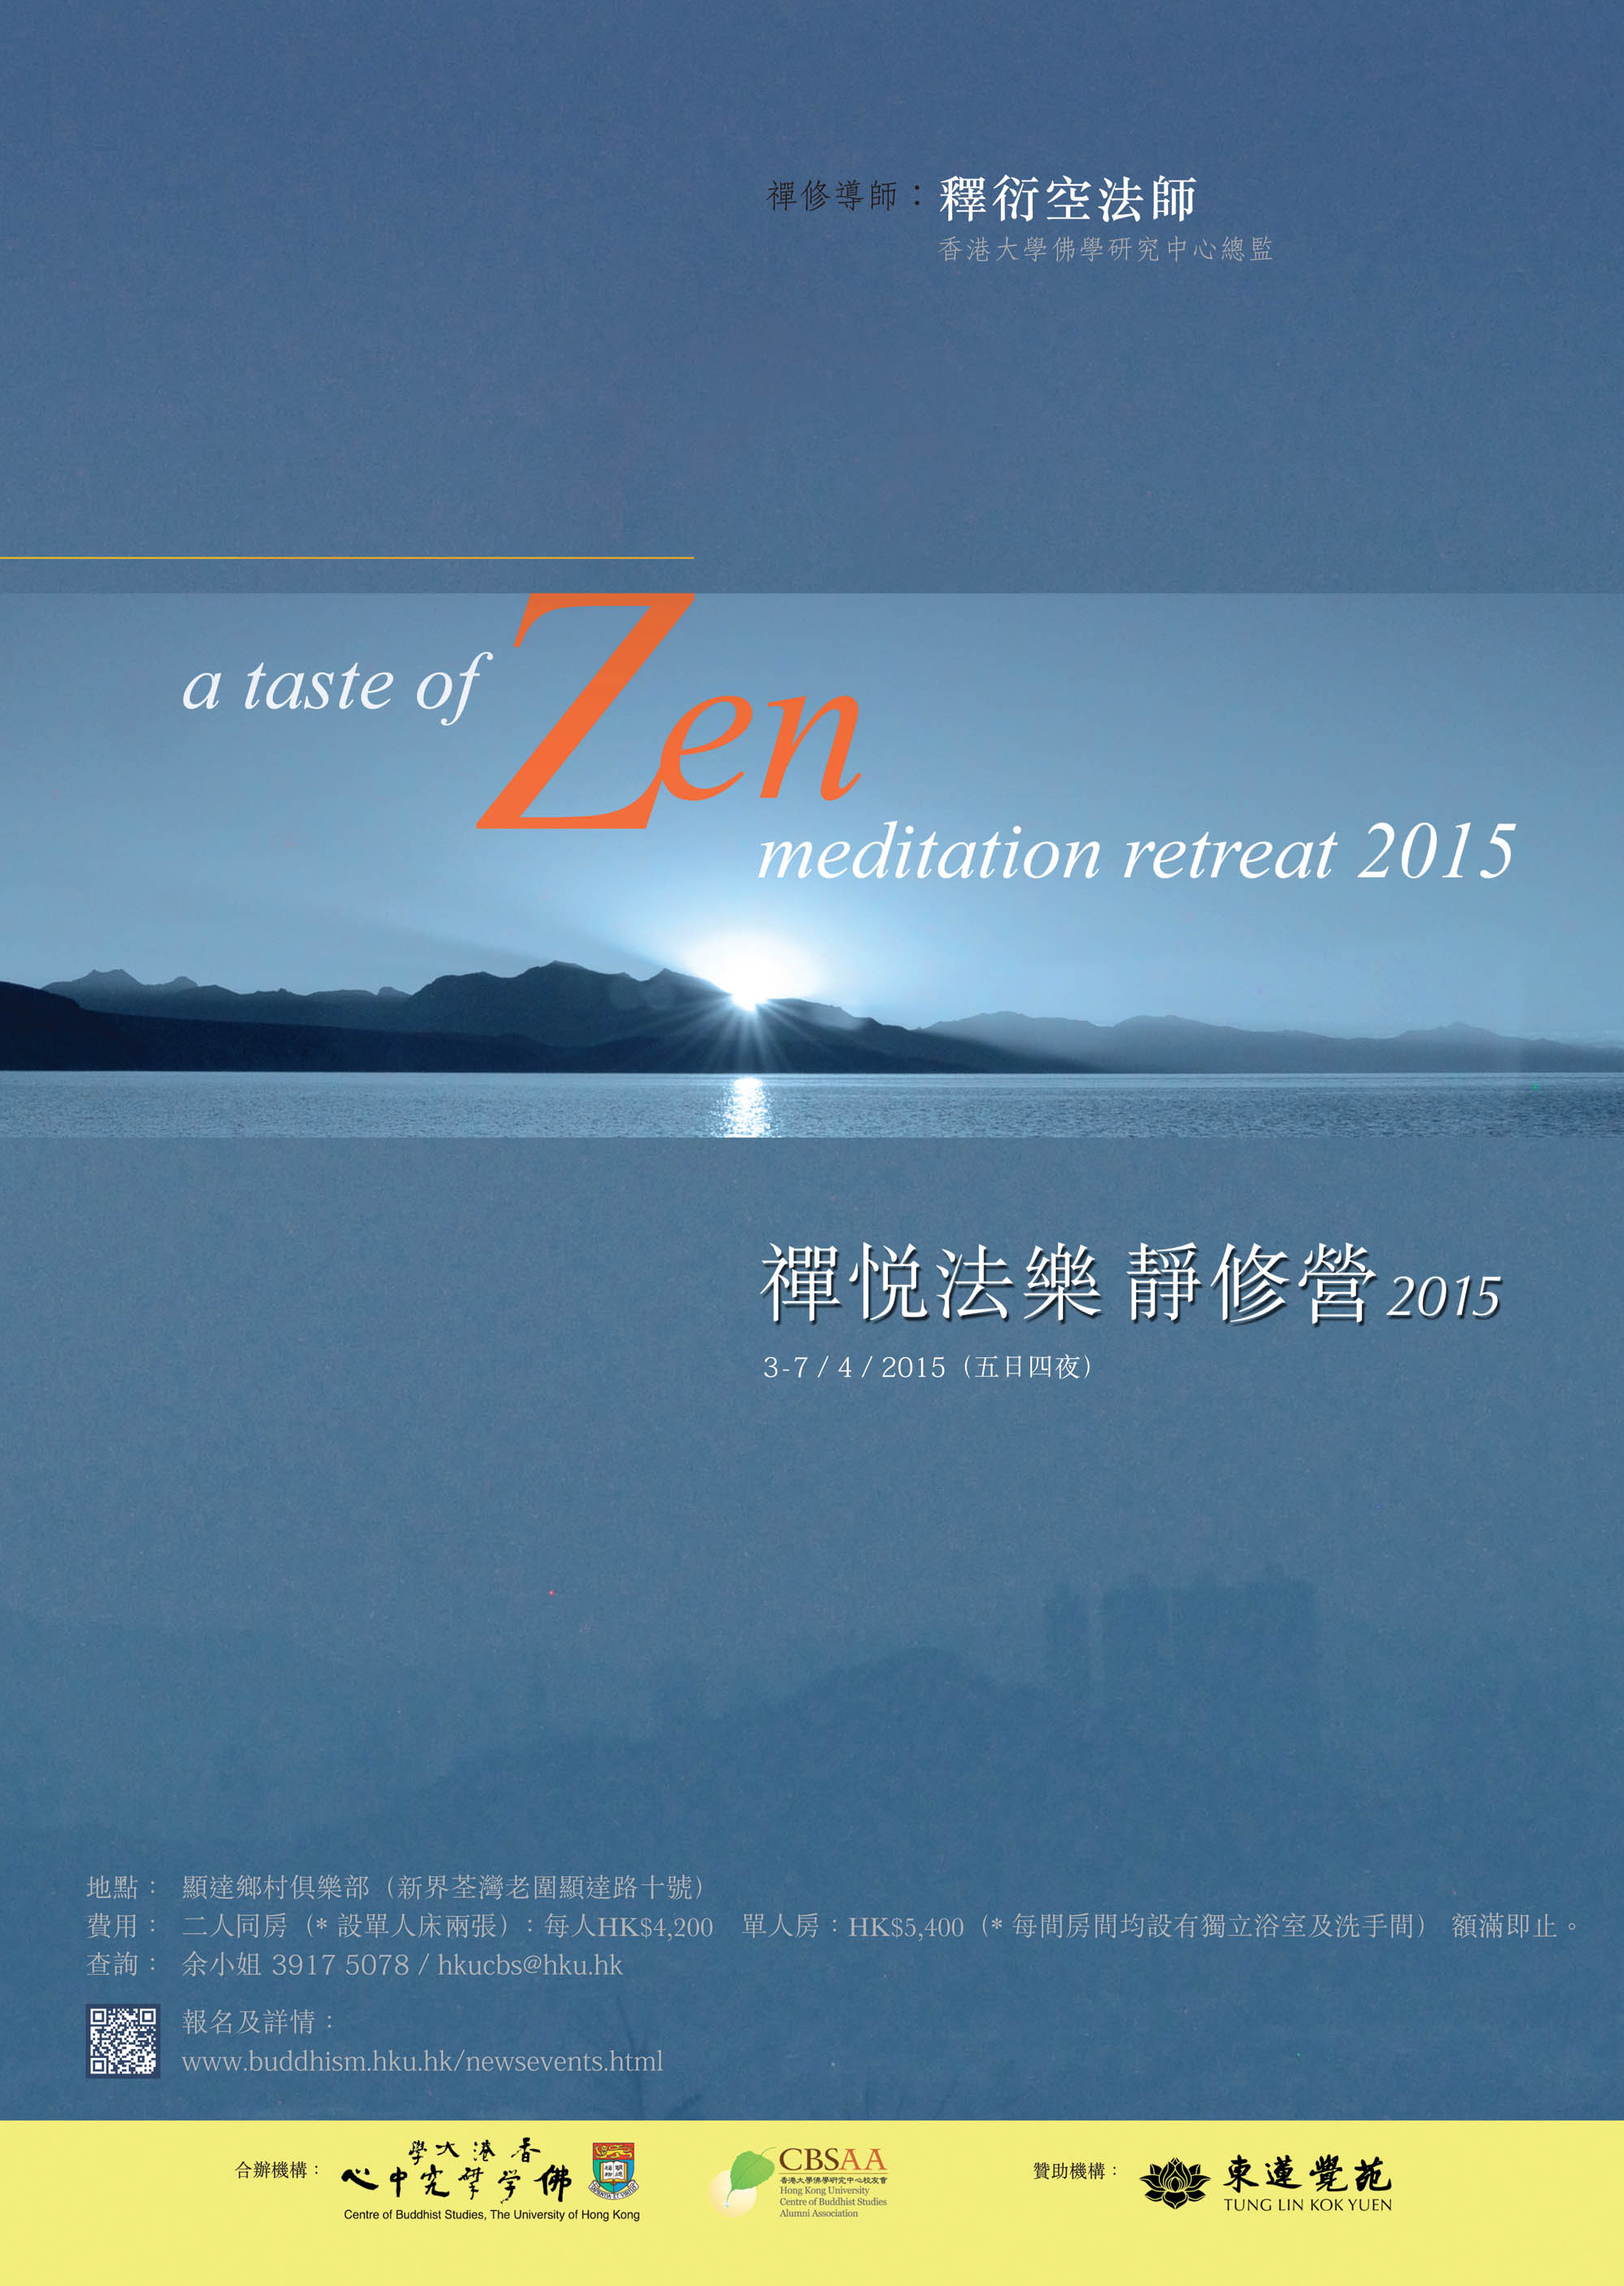 禪悅法樂靜修營2015 (A Taste of Zen Meditation Retreat)